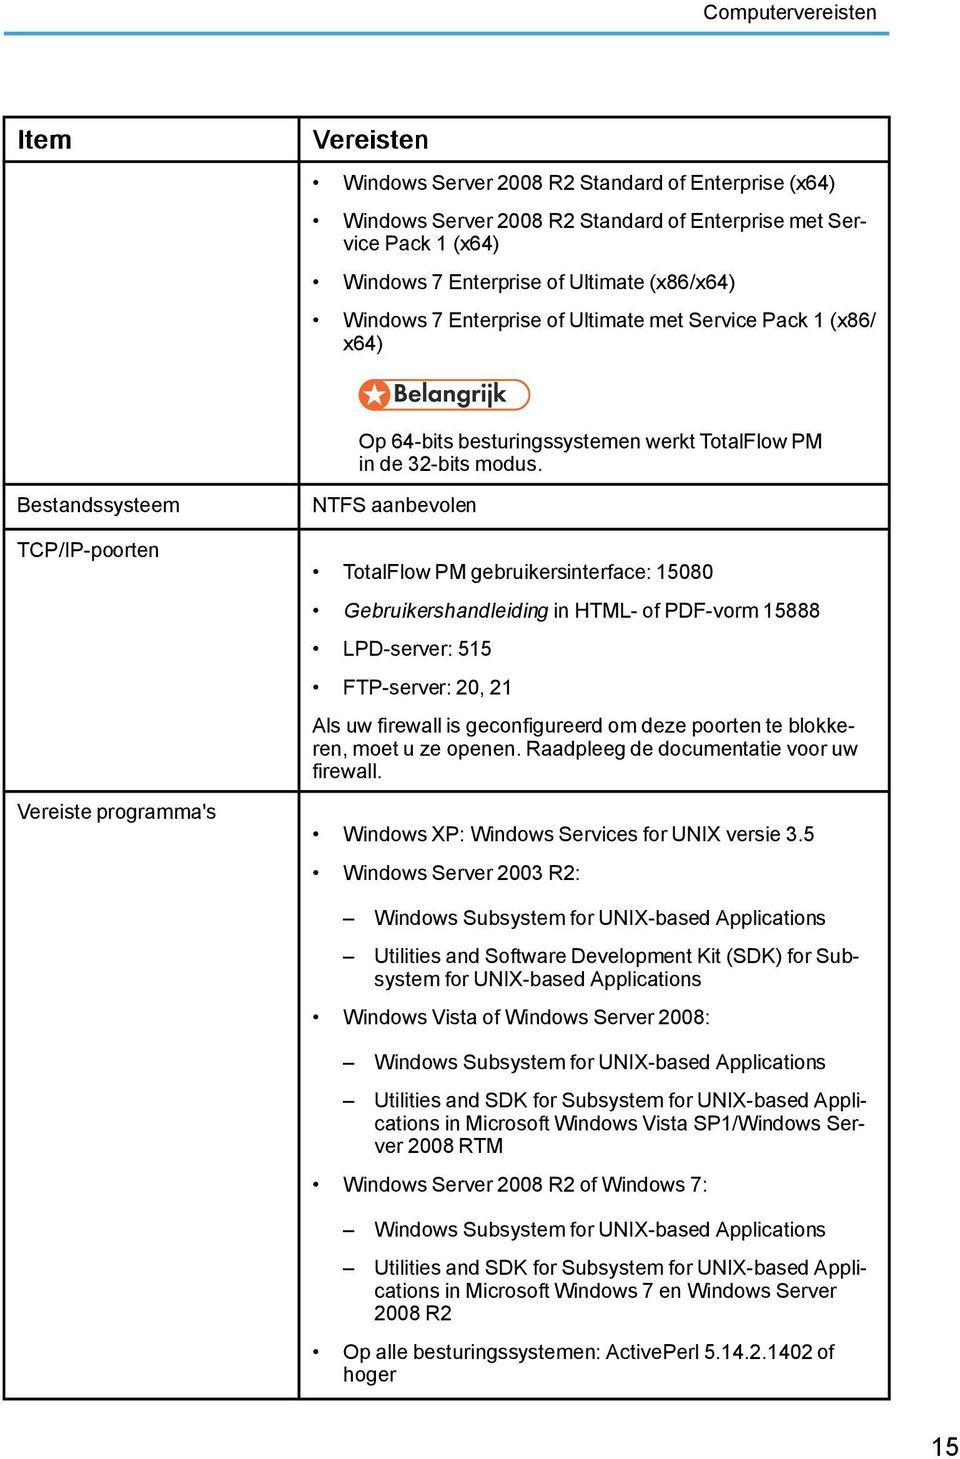 Bestandssysteem TCP/IP-poorten Vereiste programma's NTFS aanbevolen TotalFlow PM gebruikersinterface: 15080 Gebruikershandleiding in HTML- of PDF-vorm 15888 LPD-server: 515 FTP-server: 20, 21 Als uw